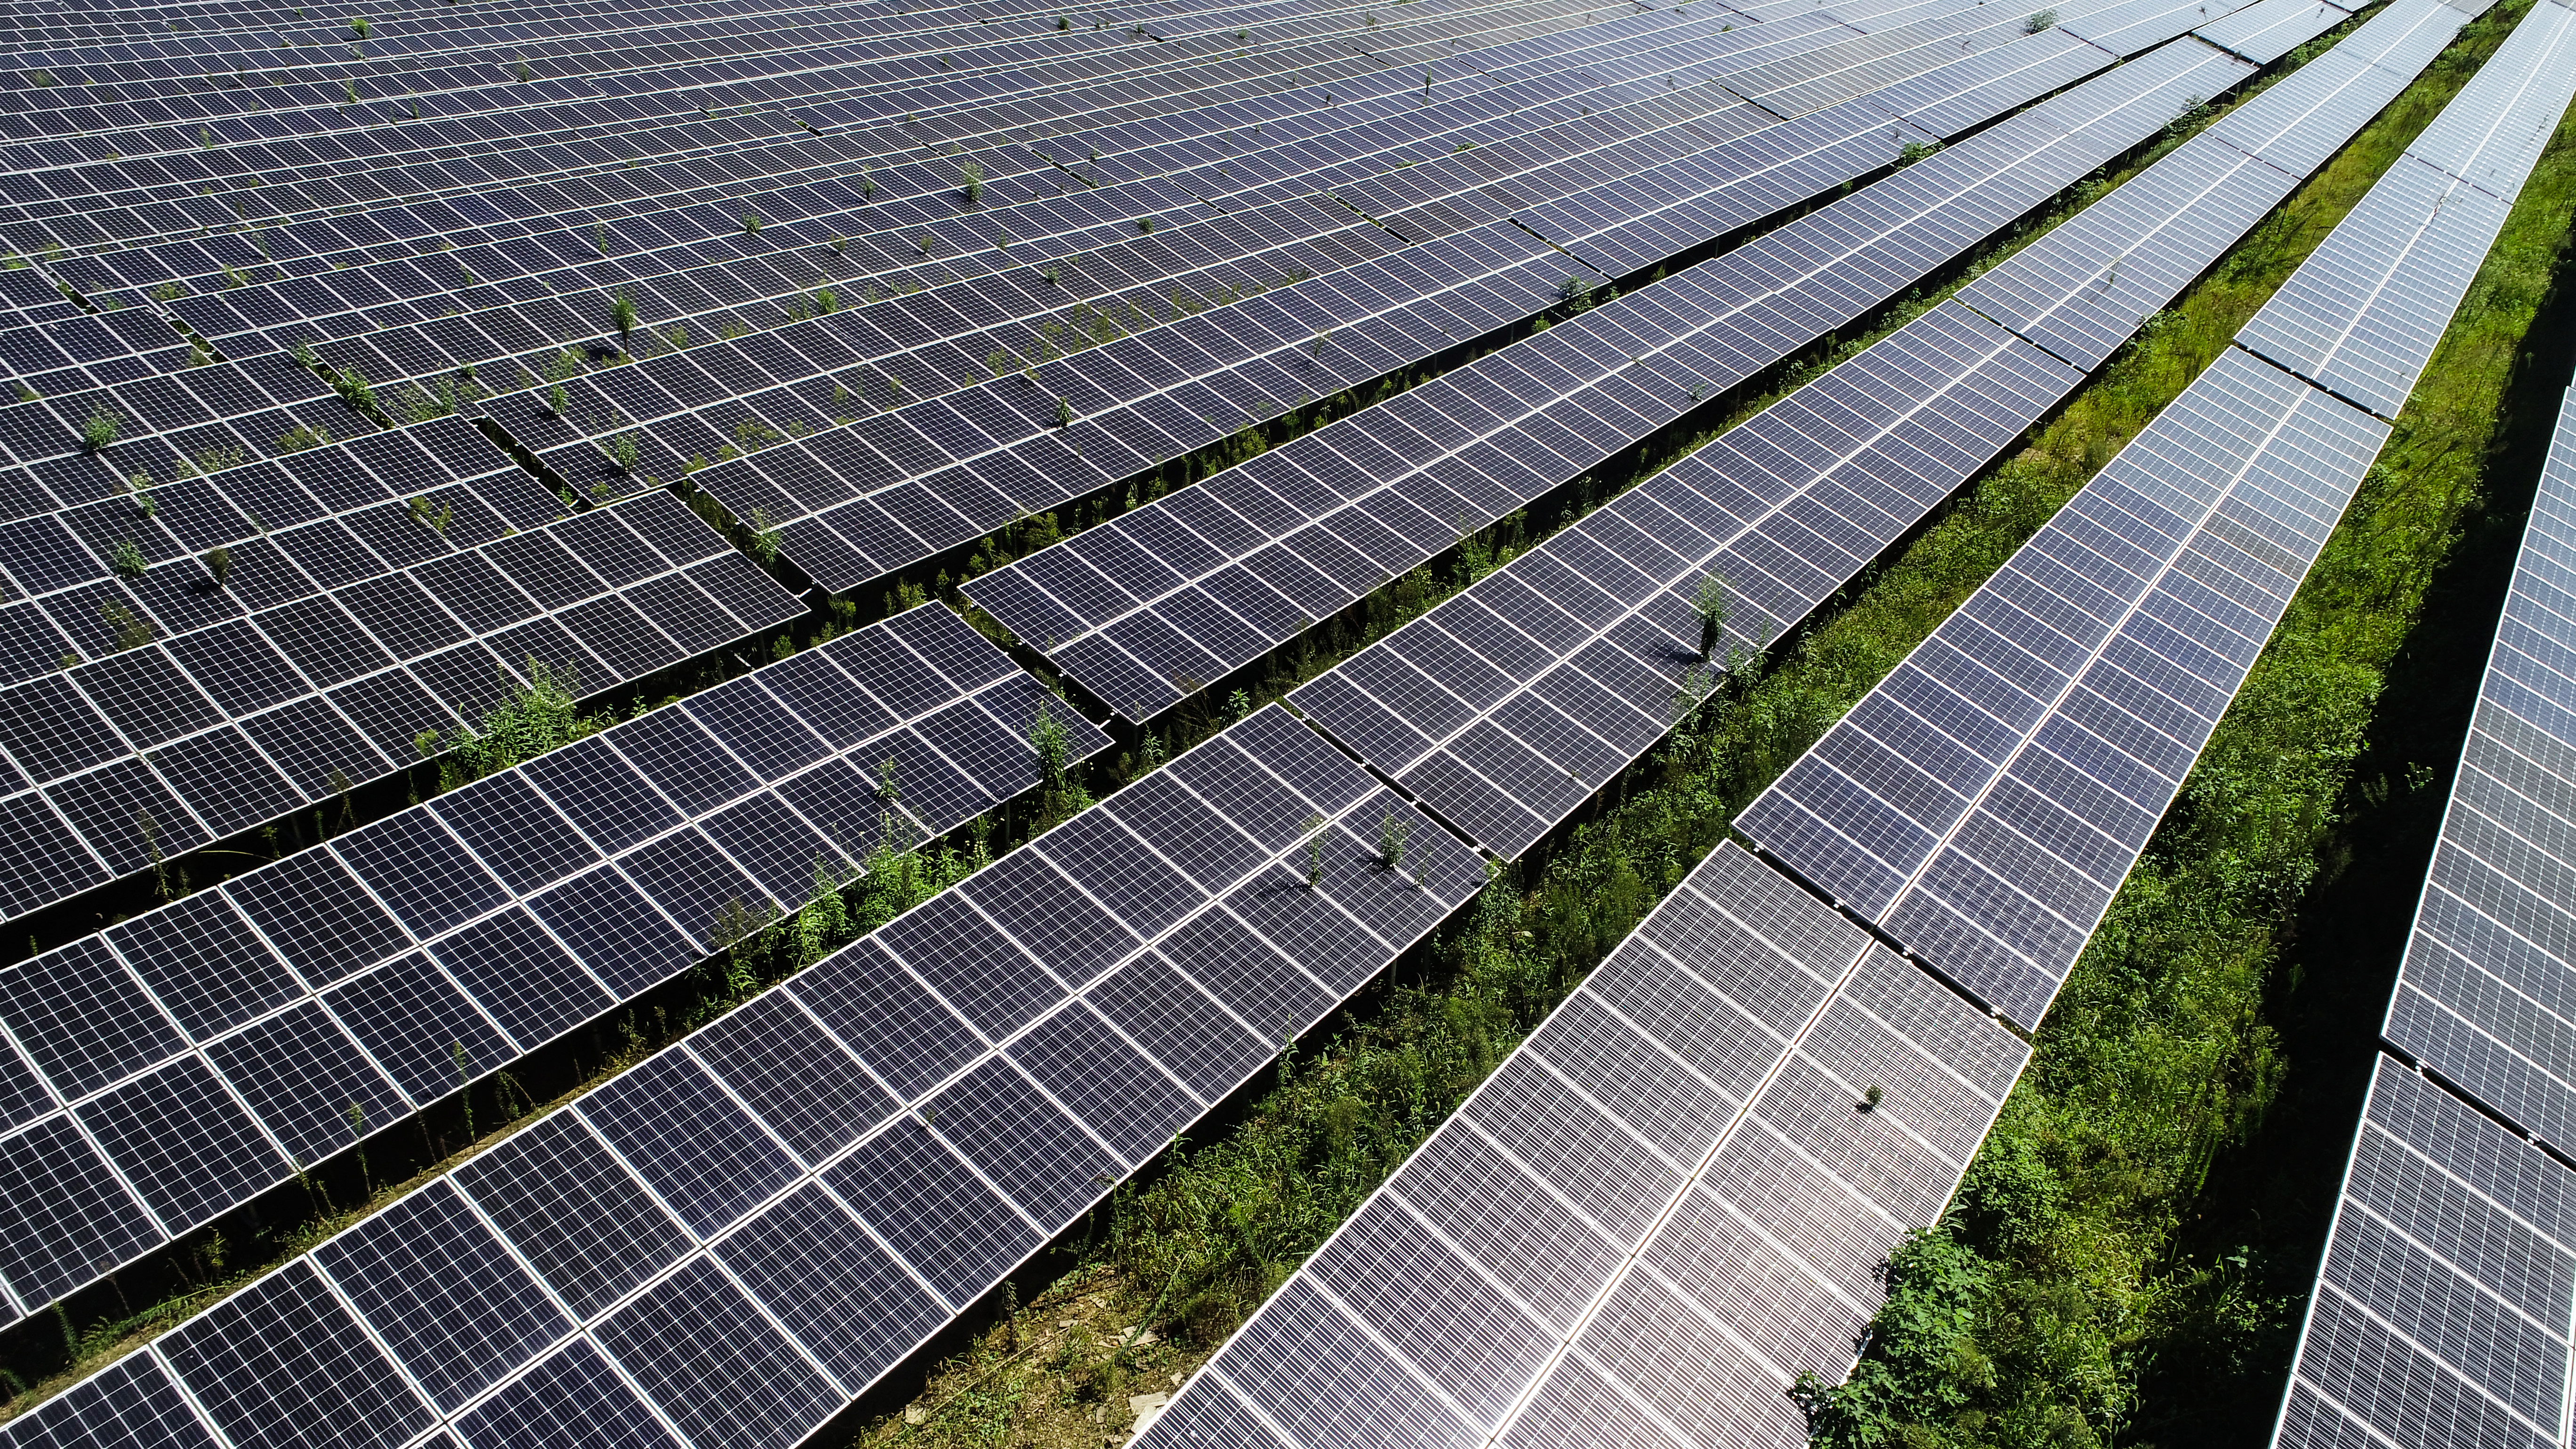 Photovoltaic ထုတ်ကုန်များသည် ပို့ကုန်များအတွက် တိုးတက်မှုအမှတ်သစ်တစ်ခု ဖြစ်လာခဲ့သည်။